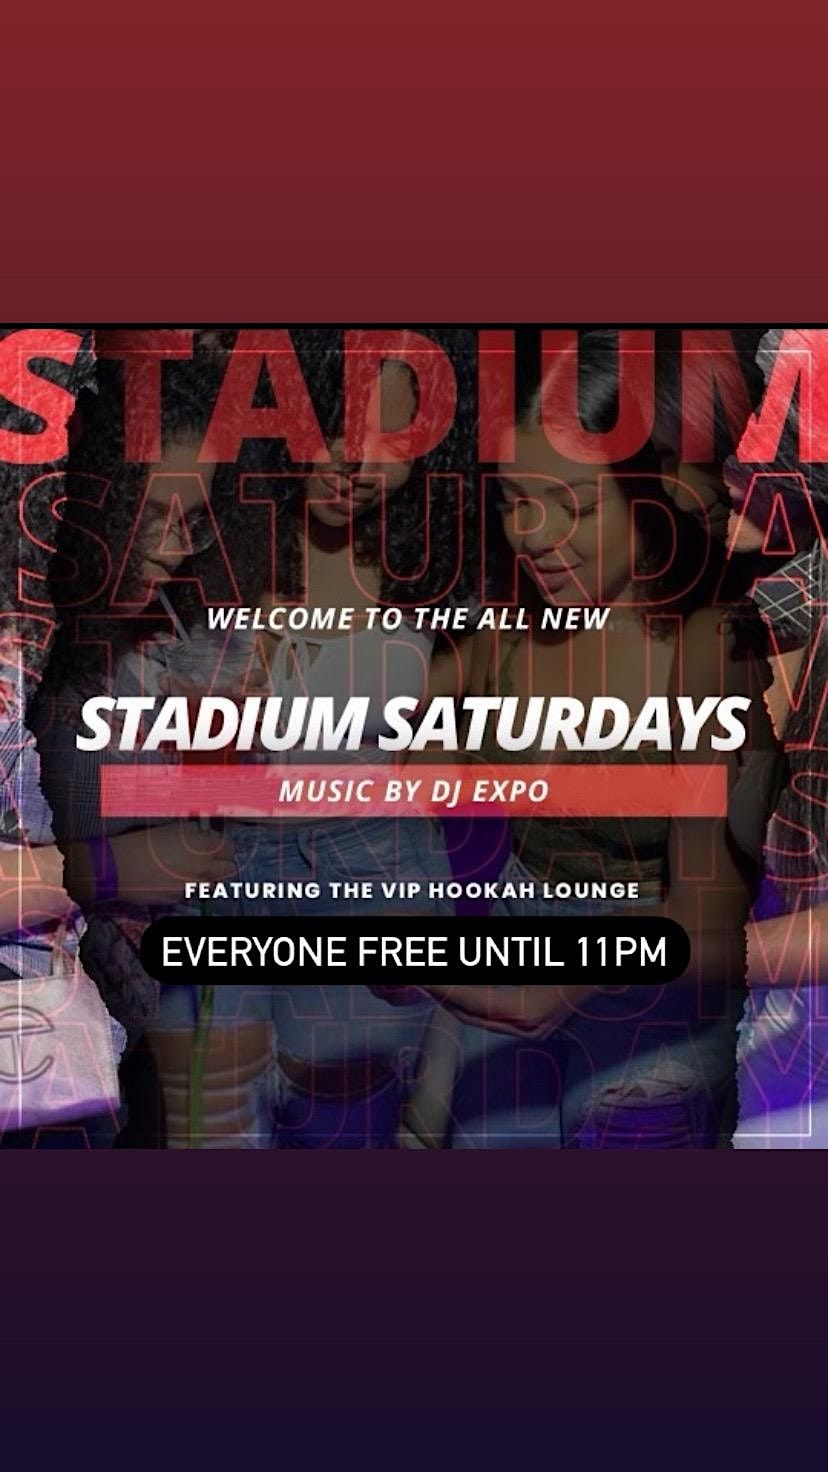 Stadium Saturdays at Stadium Bar & Lounge